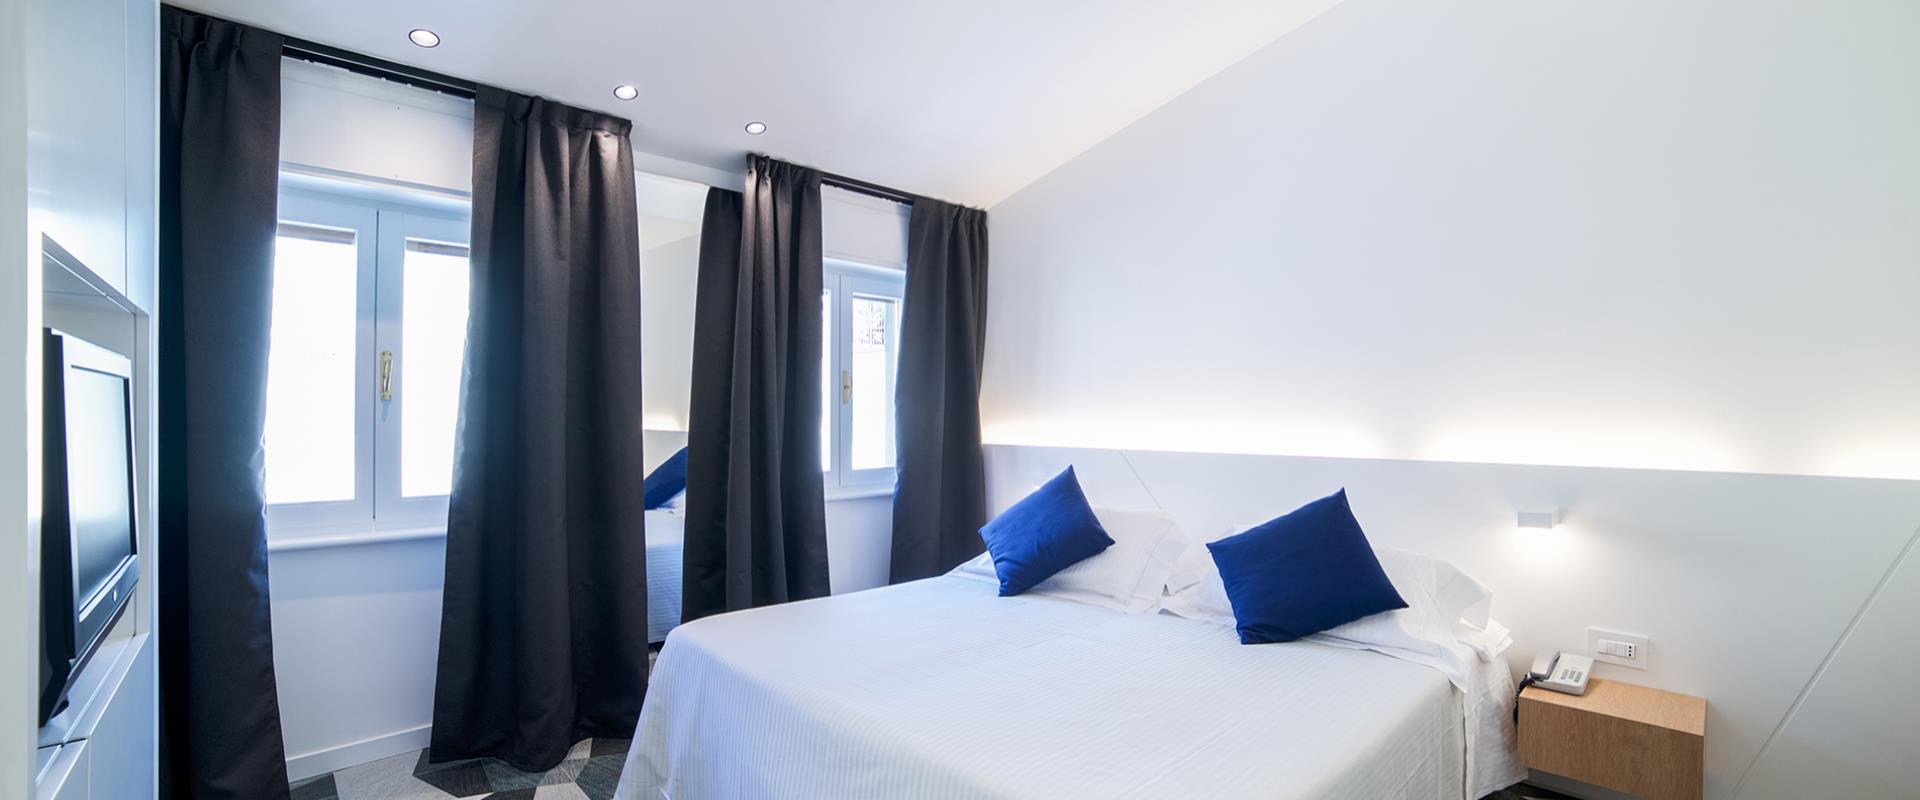 Hotel 4 stelle in centro a Bergamo, oltre 90 camere dotate di ogni comfort!